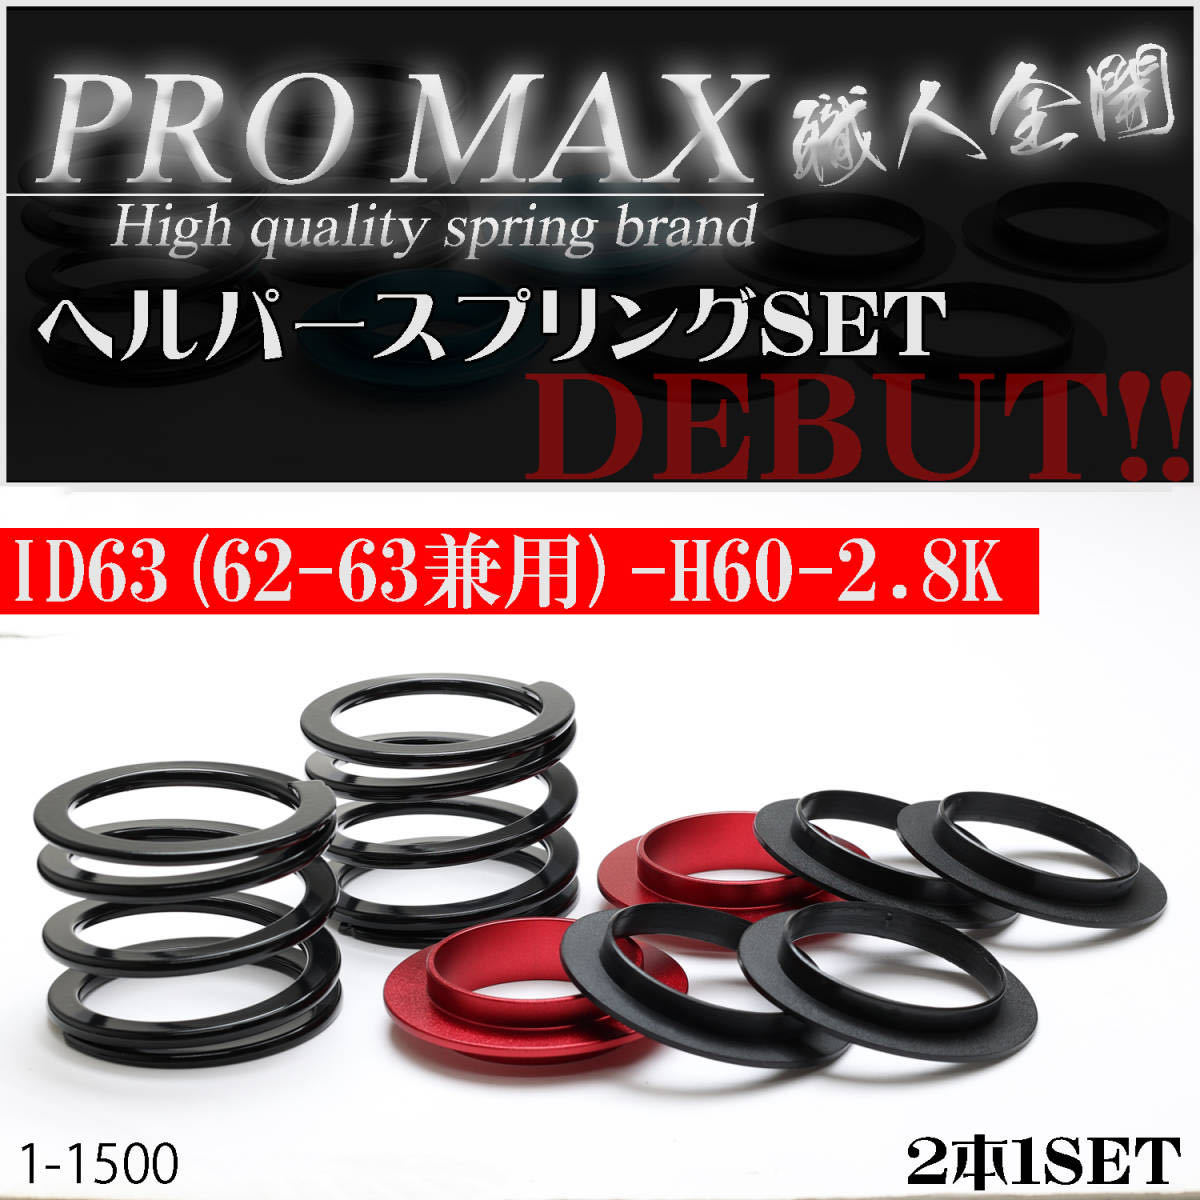 【PRO MAX】プロマックス ヘルパースプリングセット・ＩＤ63（62-63兼用-H60-2.8K選べるシートカラー4色！（サスペンション・バネ）_画像1